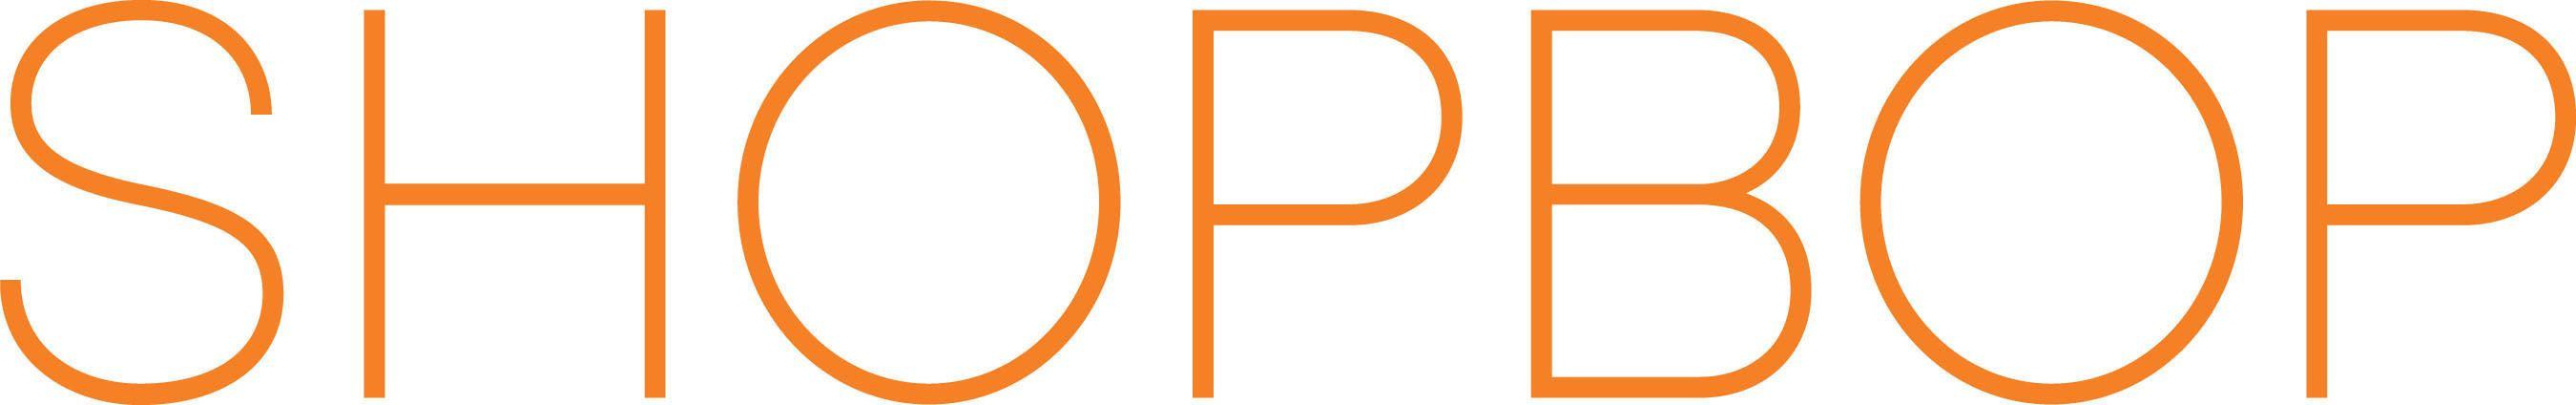 Shopbop Logo - Shopbop.com Launches The Principle Collection